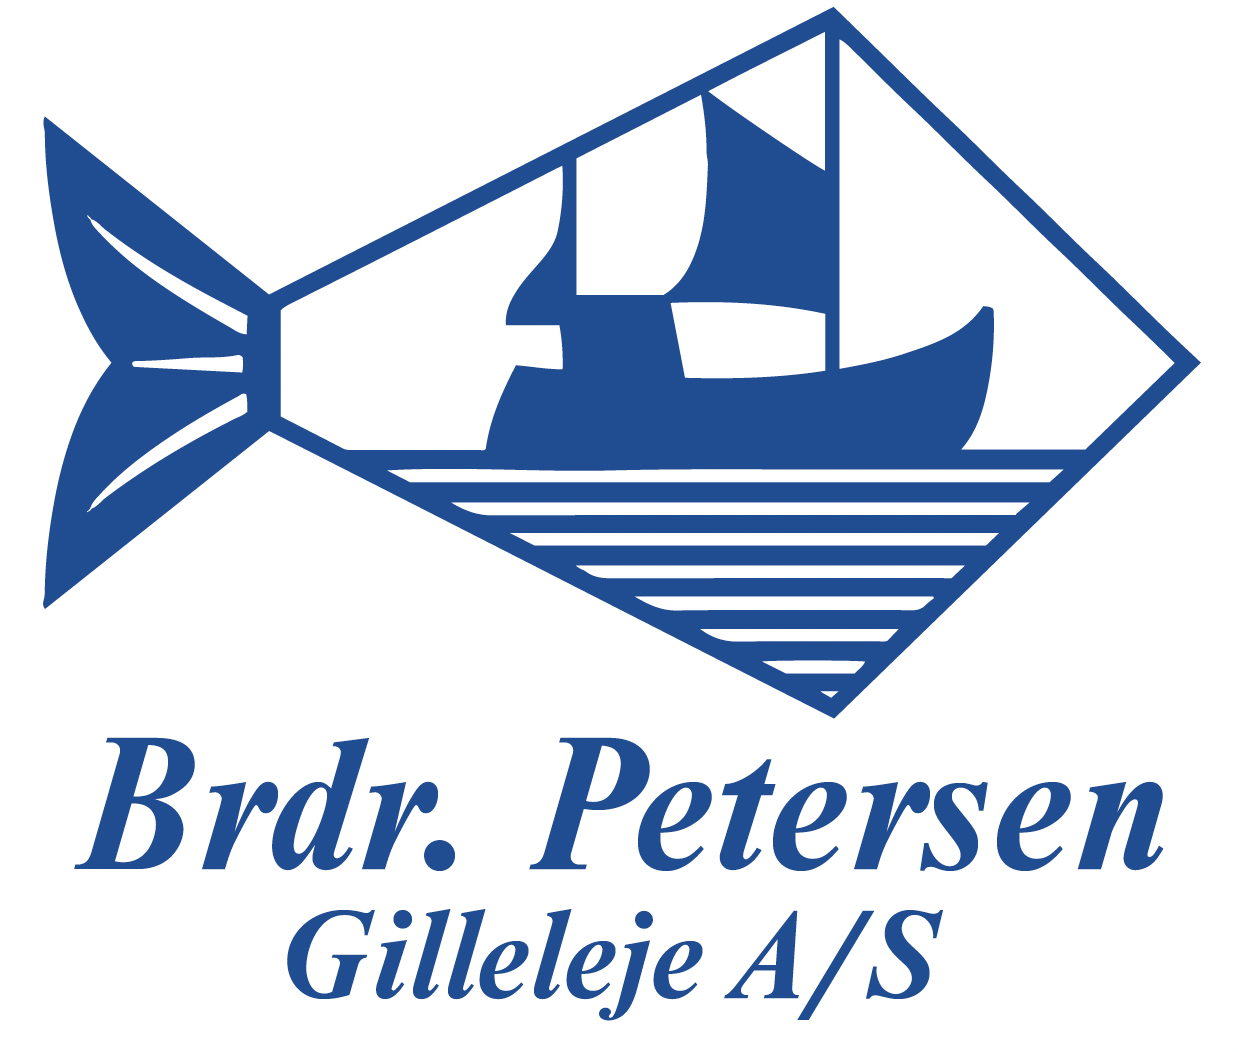 Brdr. Ptersen logo